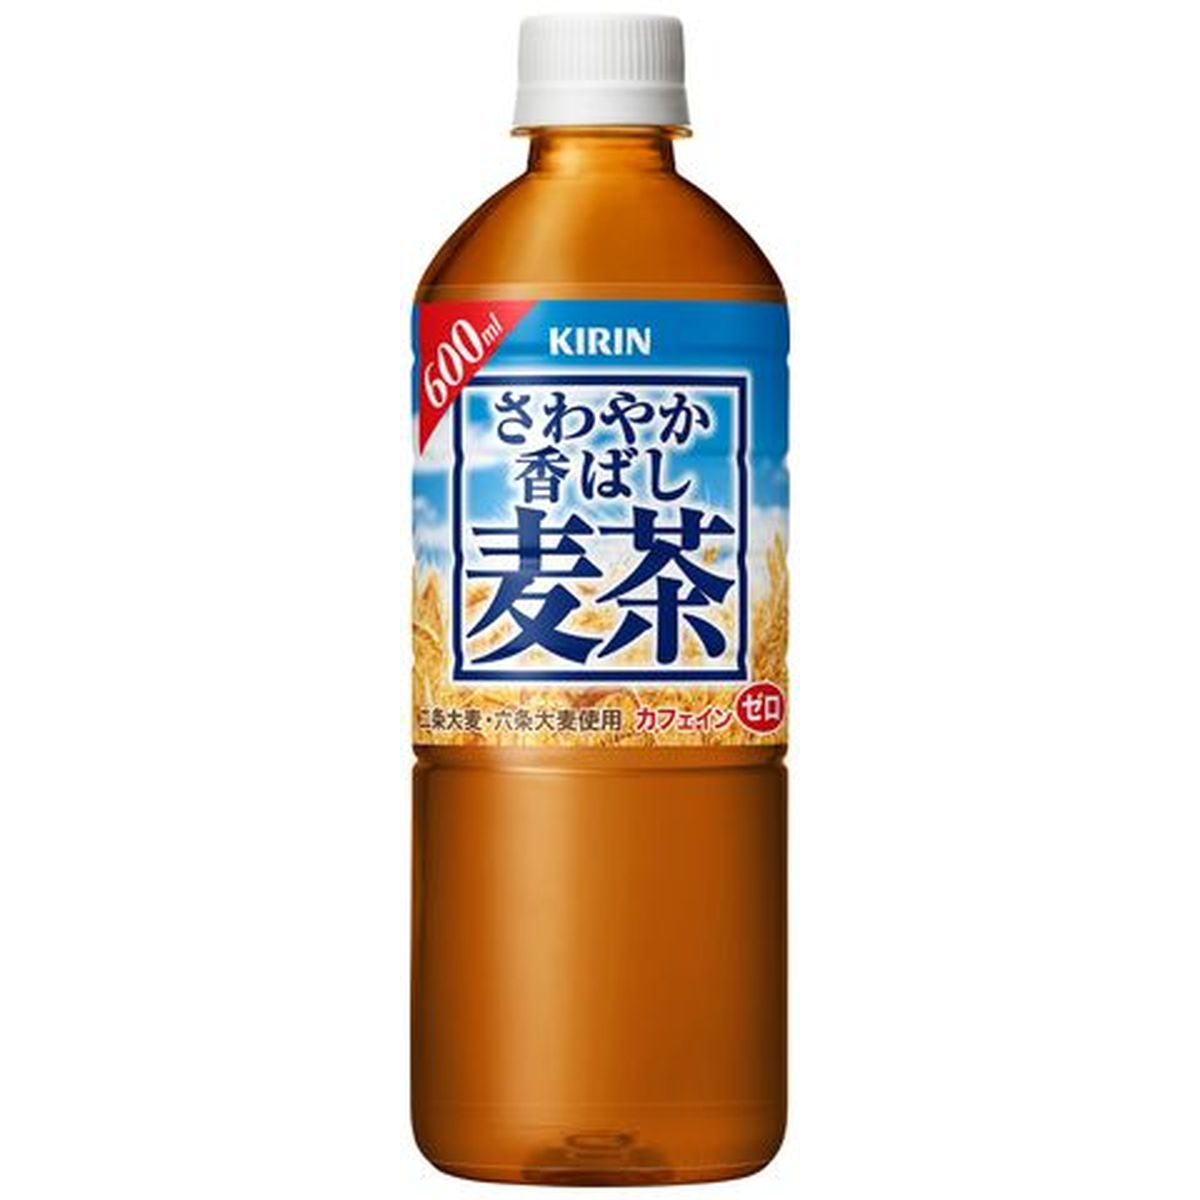 【24個入リ】キリン サワヤカ香バシ麦茶 ペット 600ml